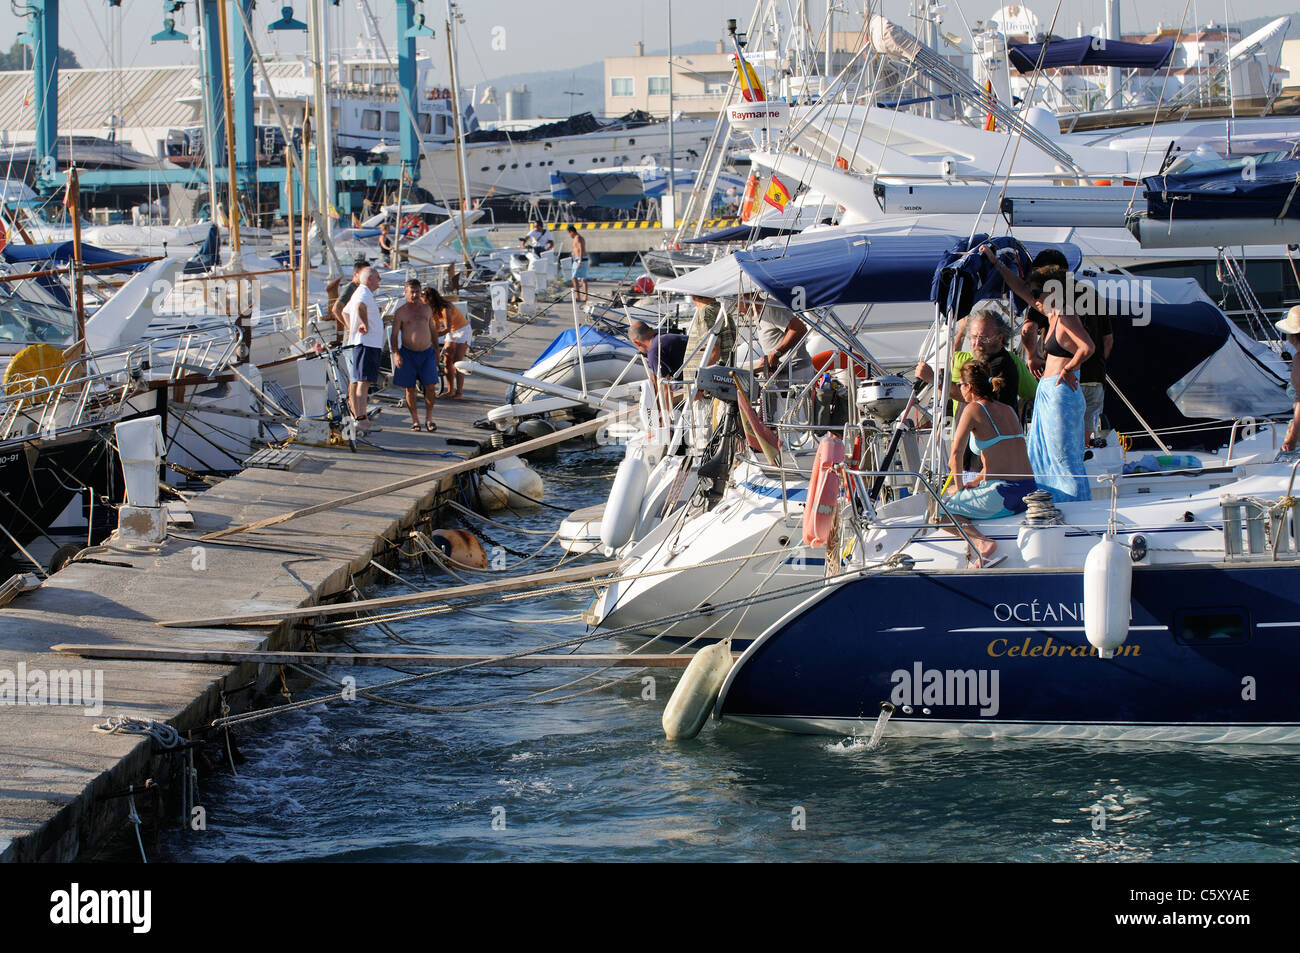 Eivissa port on the Spanish island of Ibiza an ocean going yacht on the marina Stock Photo